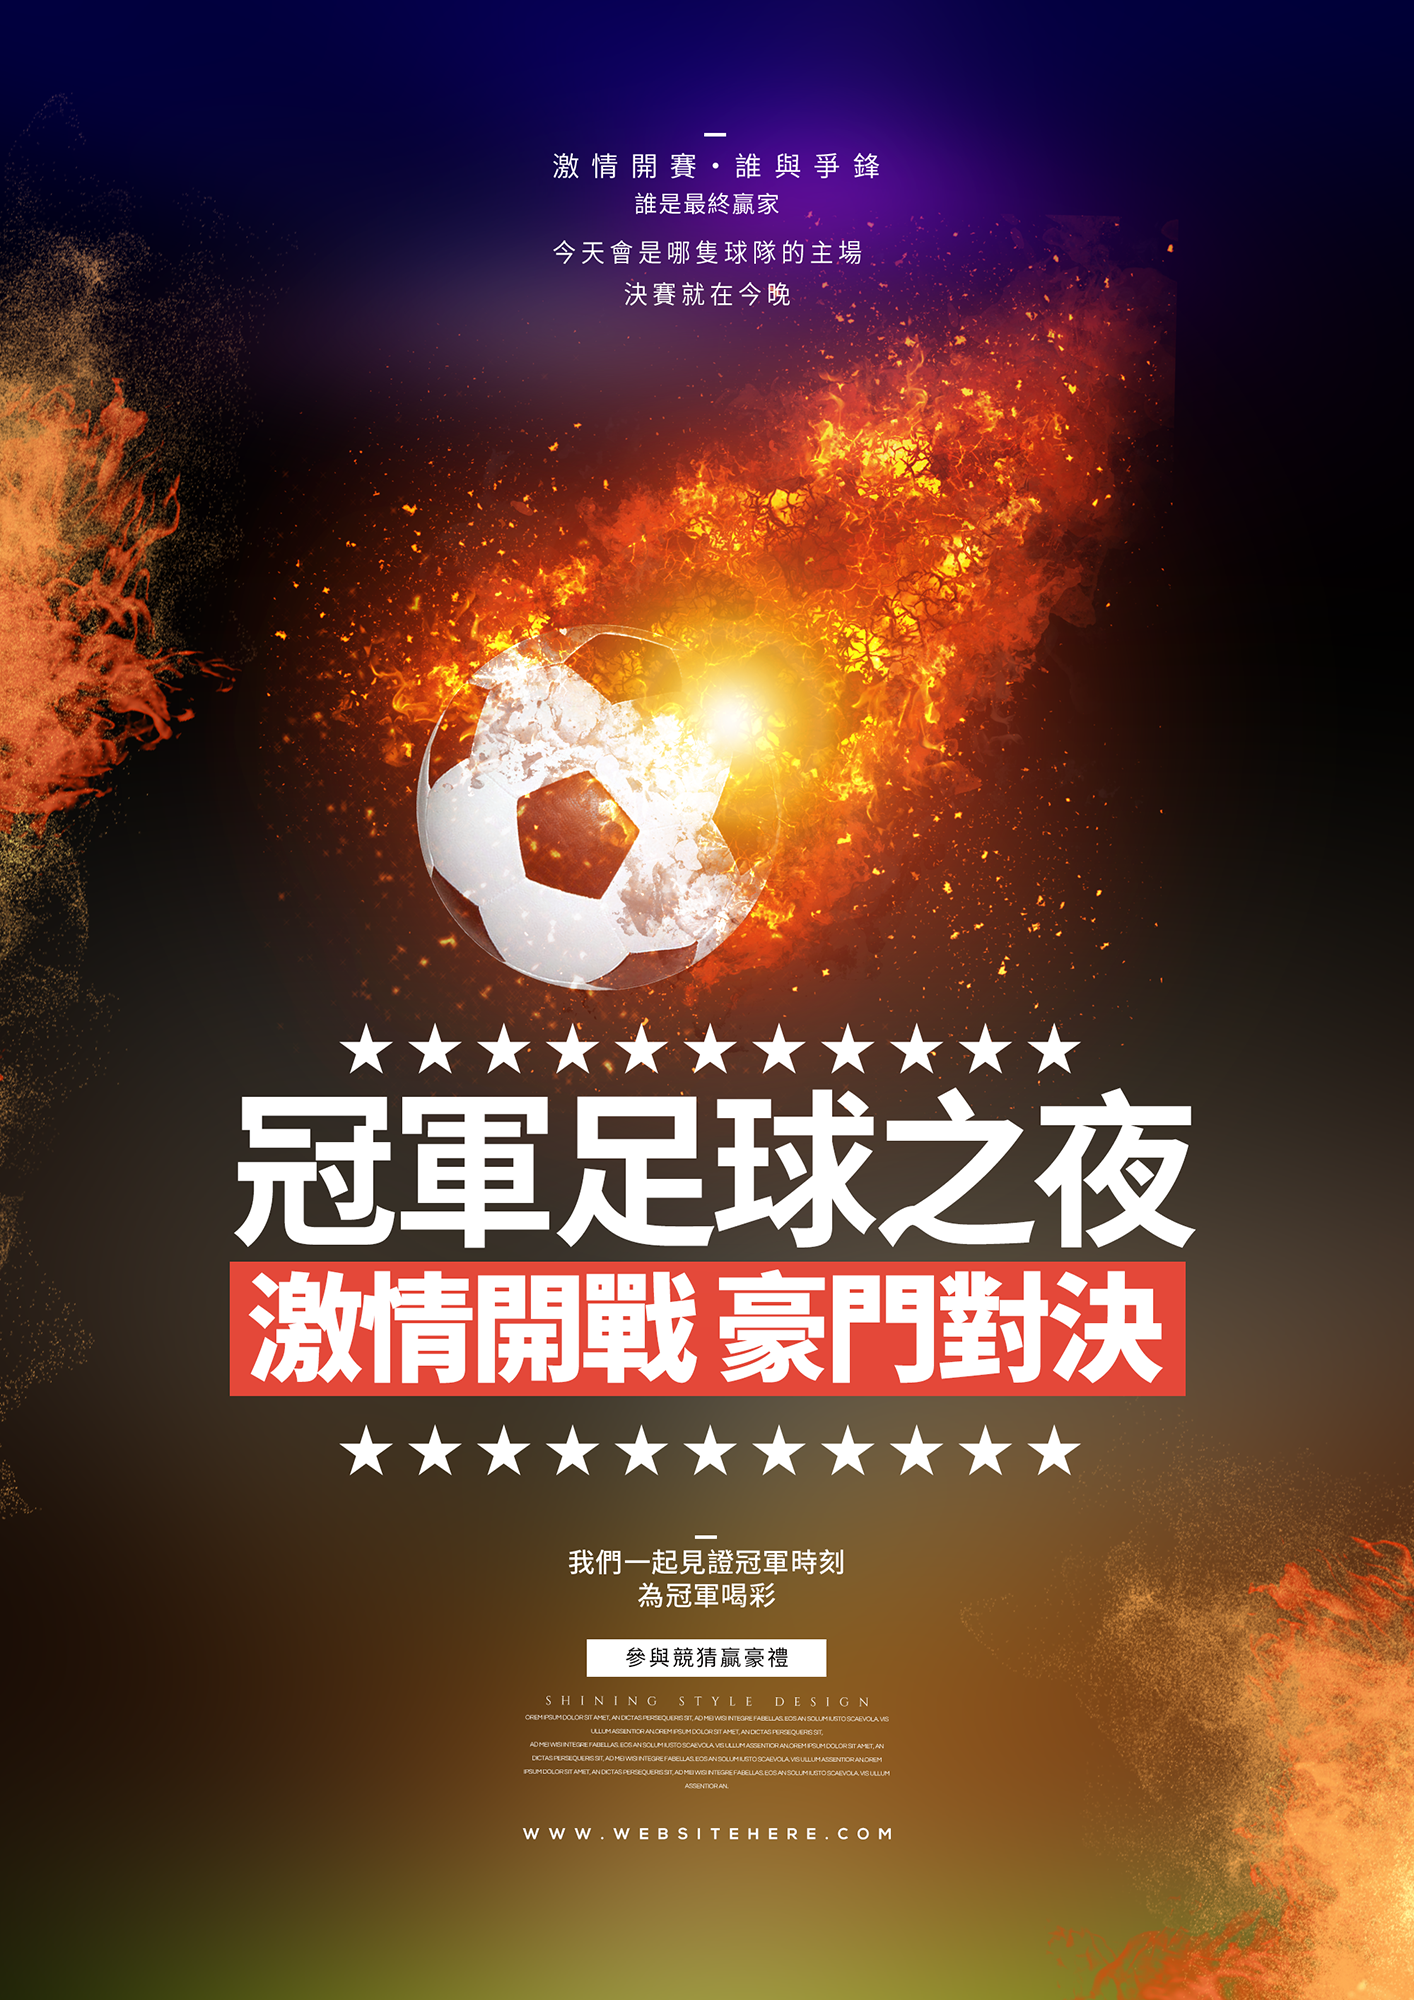 火焰足球之夜体育竞技宣传海报图片